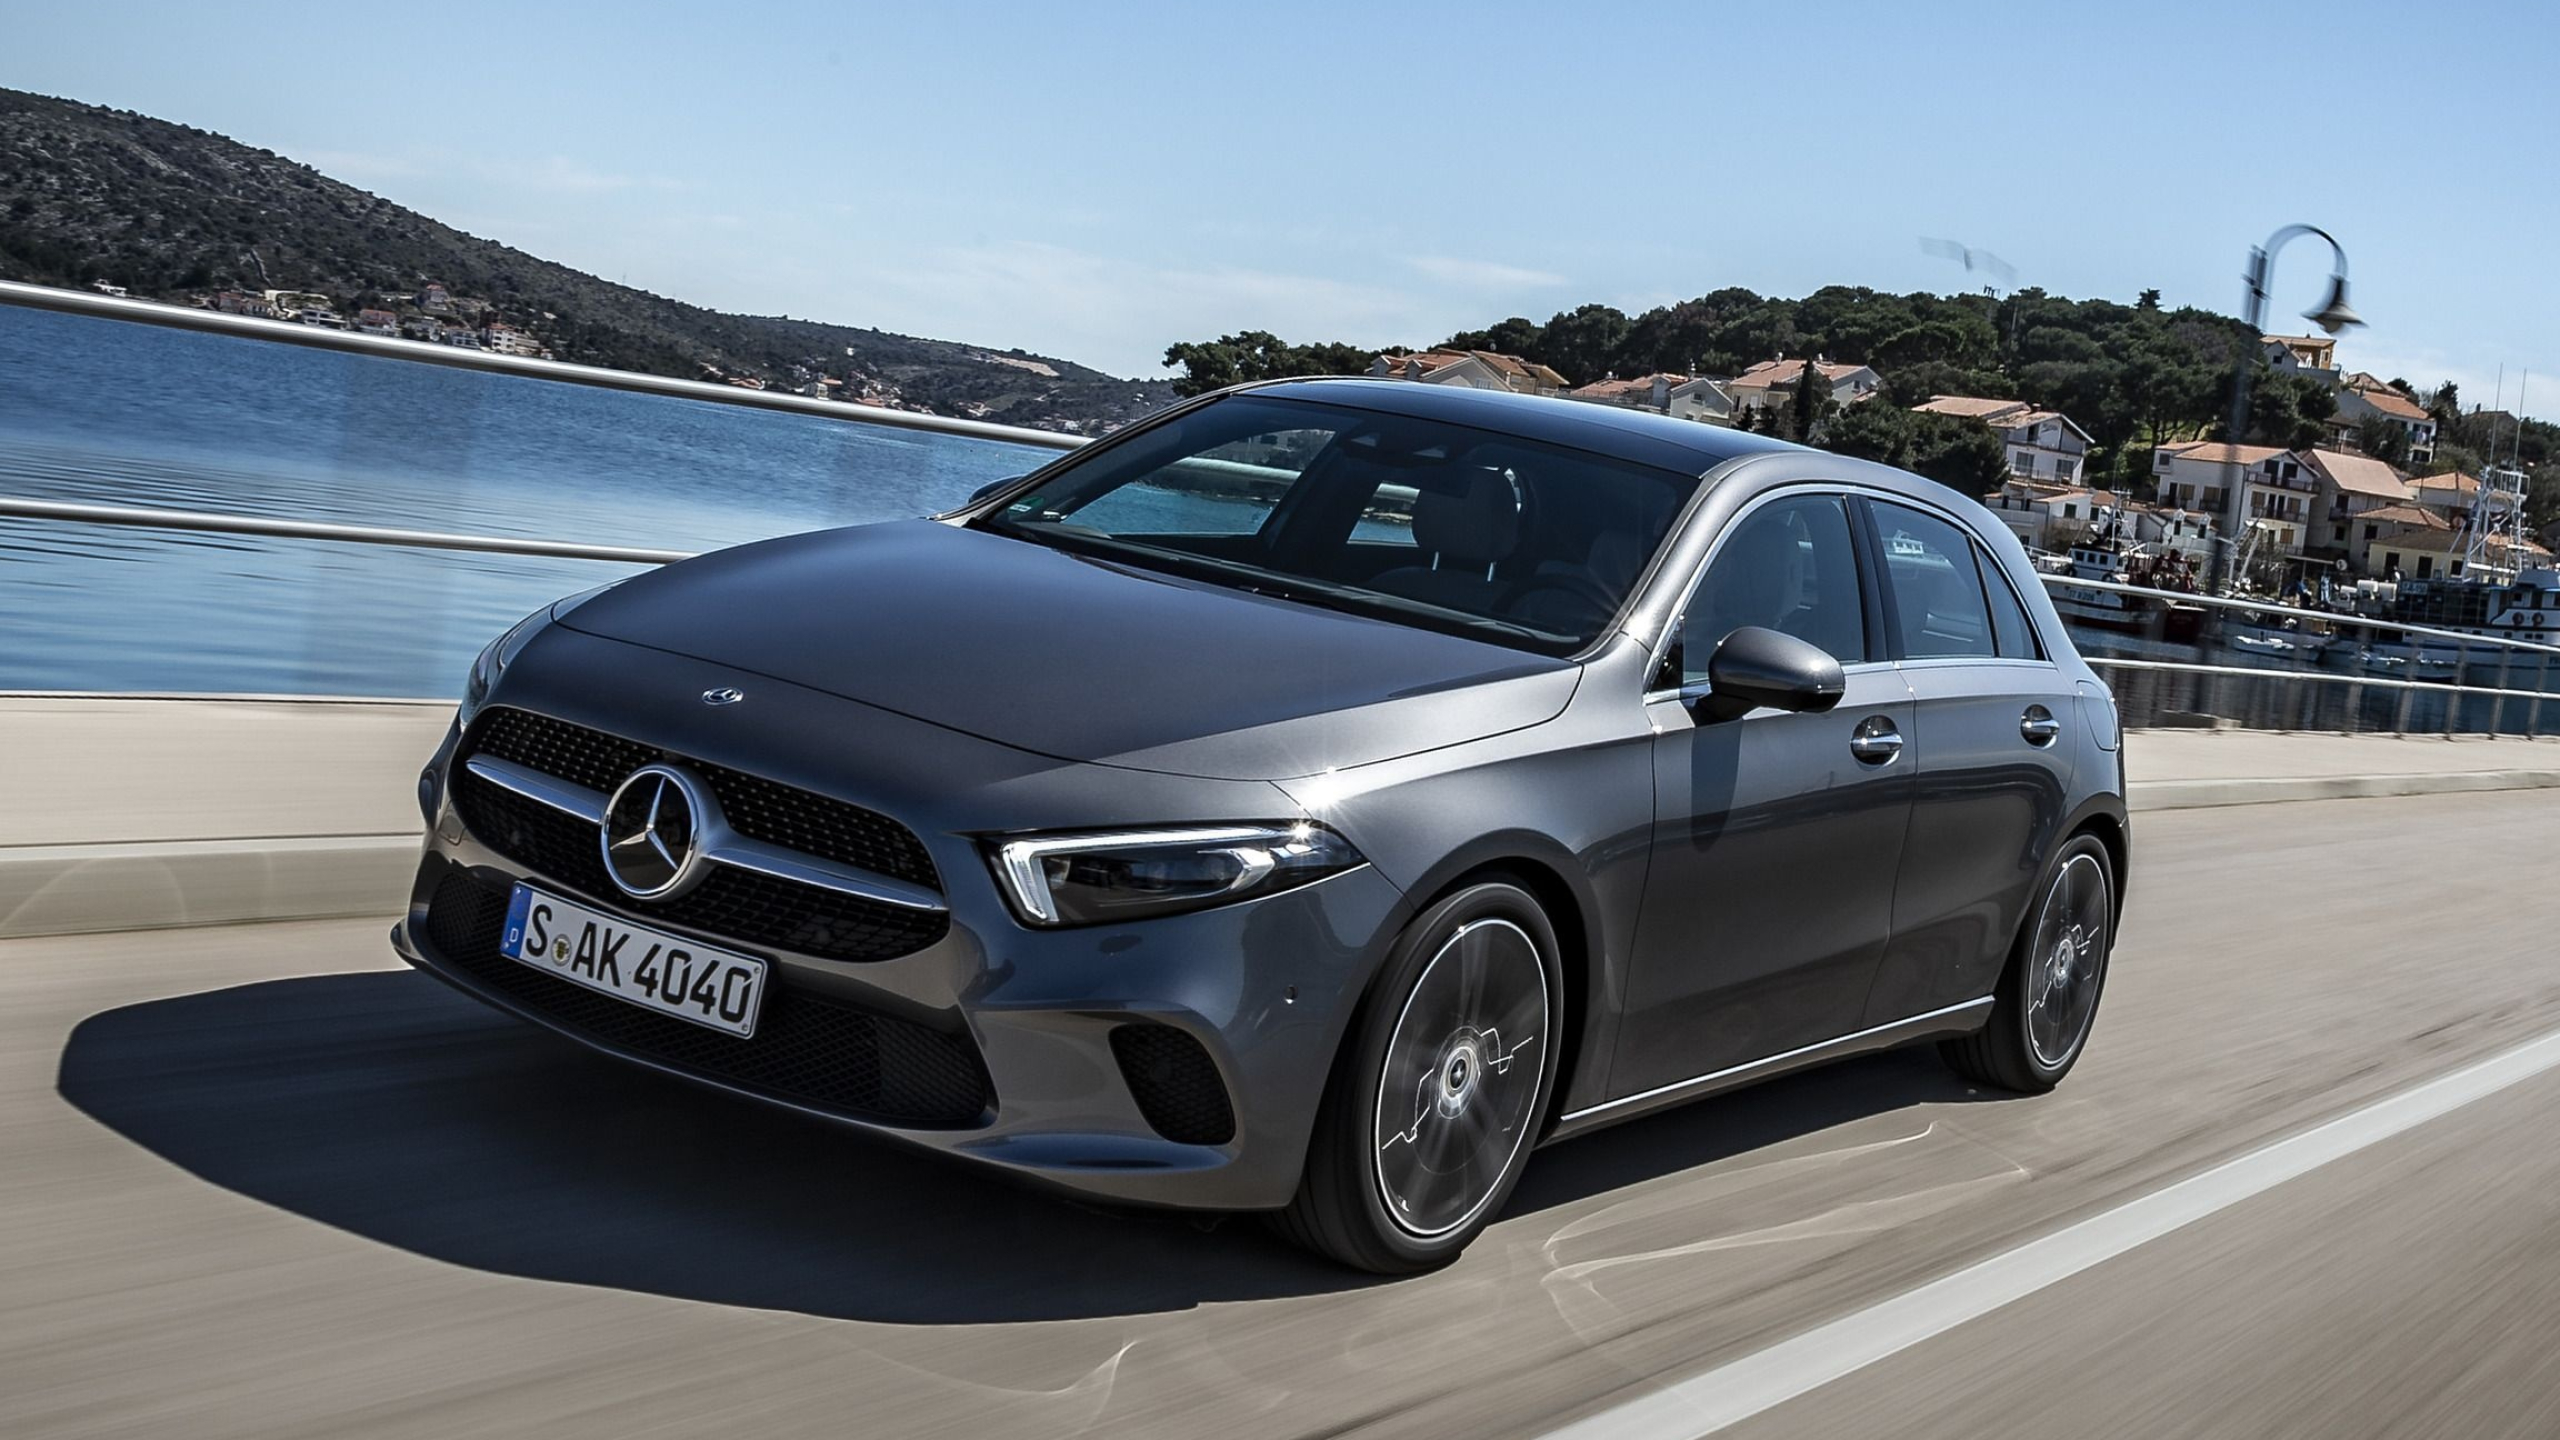 Mercedes-Benz A-Class, Sporty performance, Stunning backgrounds, Top-tier luxury, 2560x1440 HD Desktop